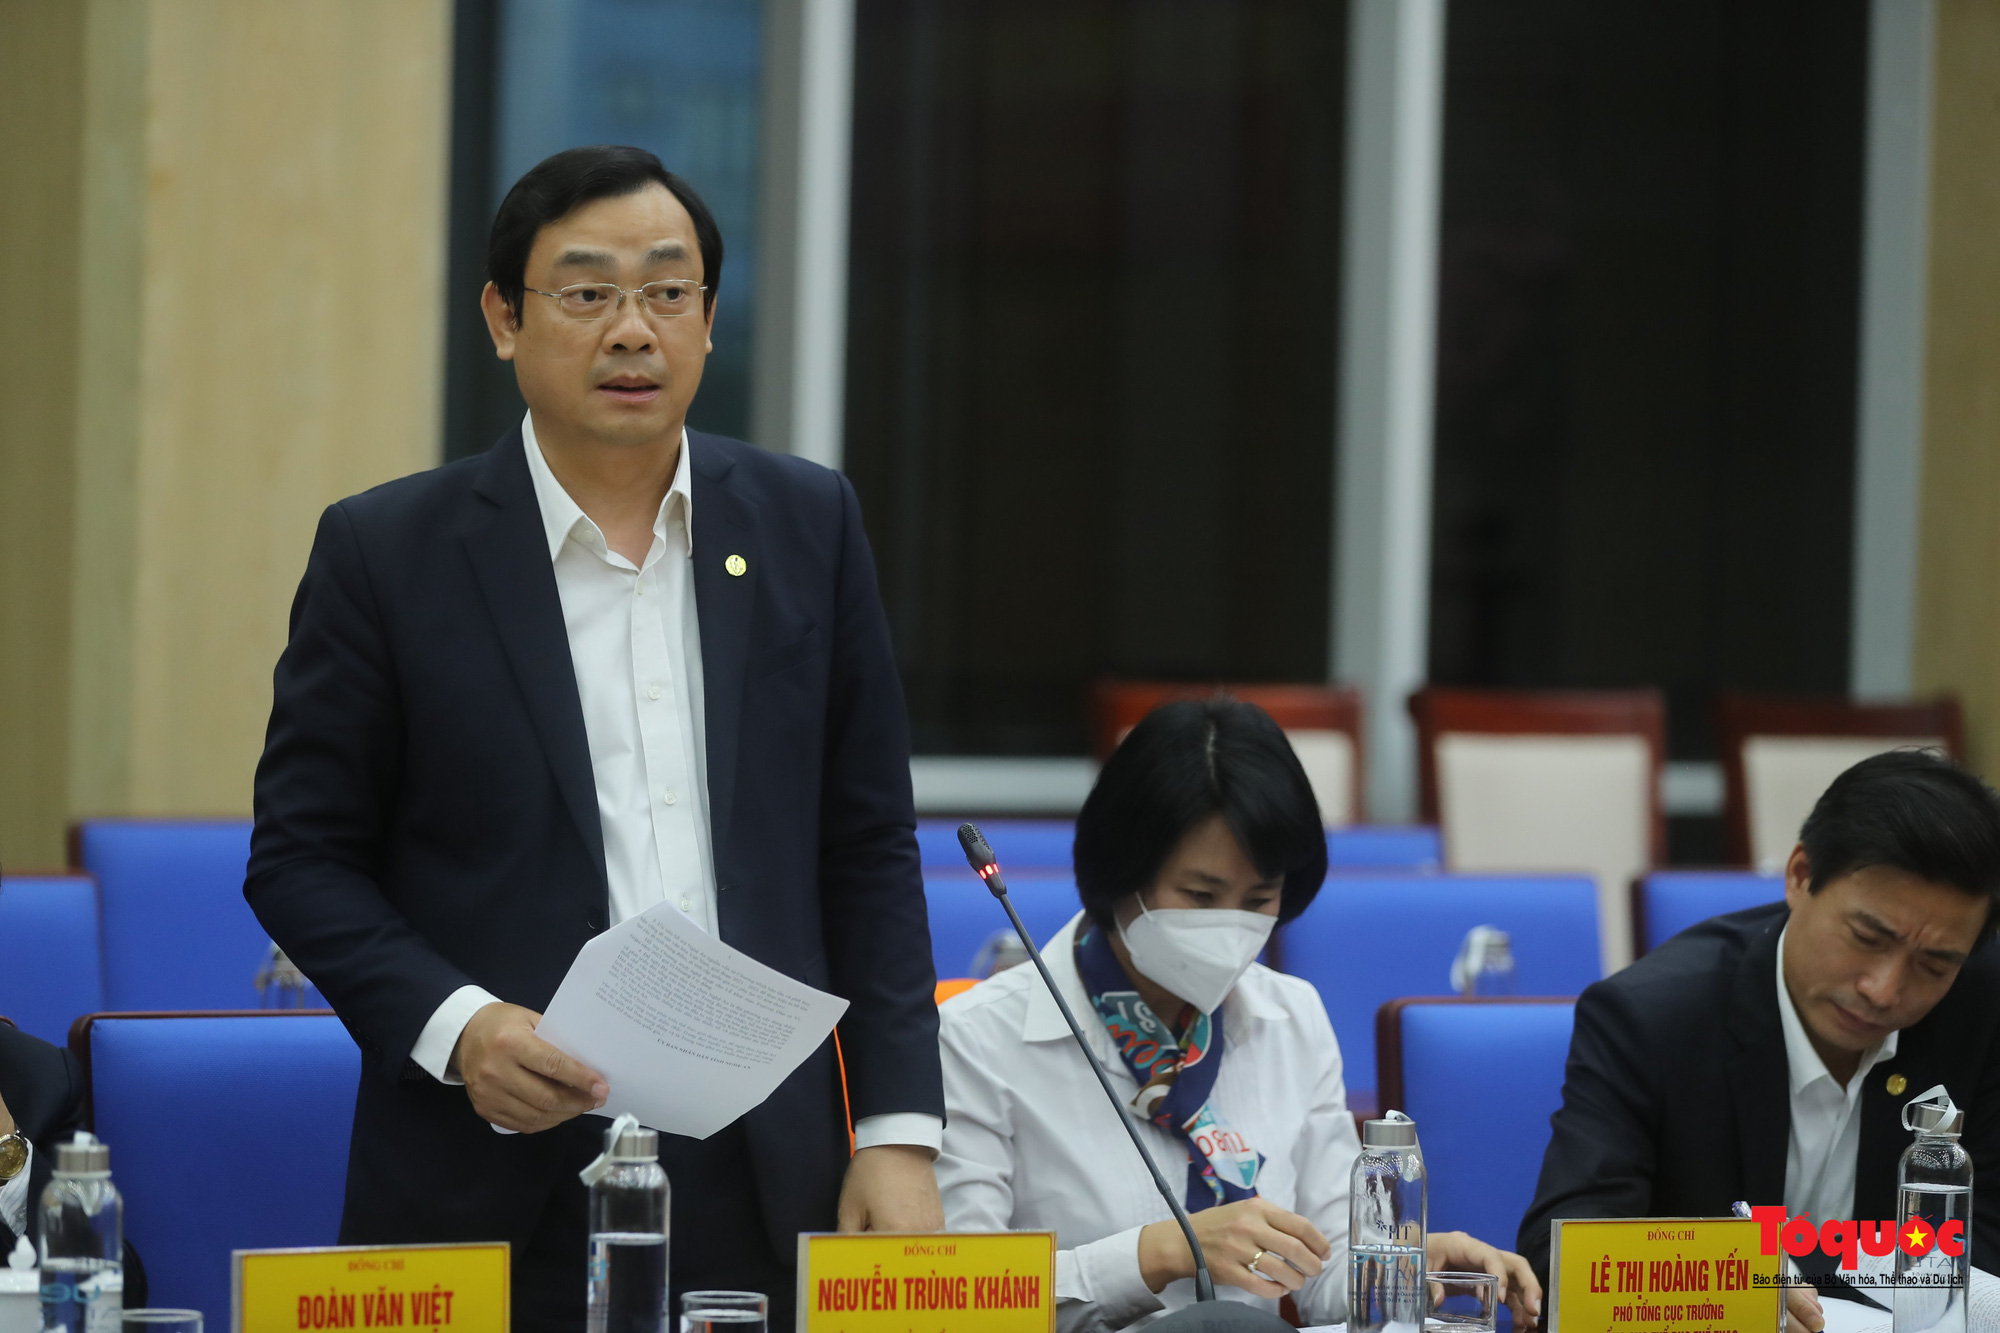 Bộ trưởng Nguyễn Văn Hùng: &quot;Phải đặt được tên gọi, viết nên câu chuyện về thương hiệu du lịch tỉnh Nghệ An&quot;  - Ảnh 5.